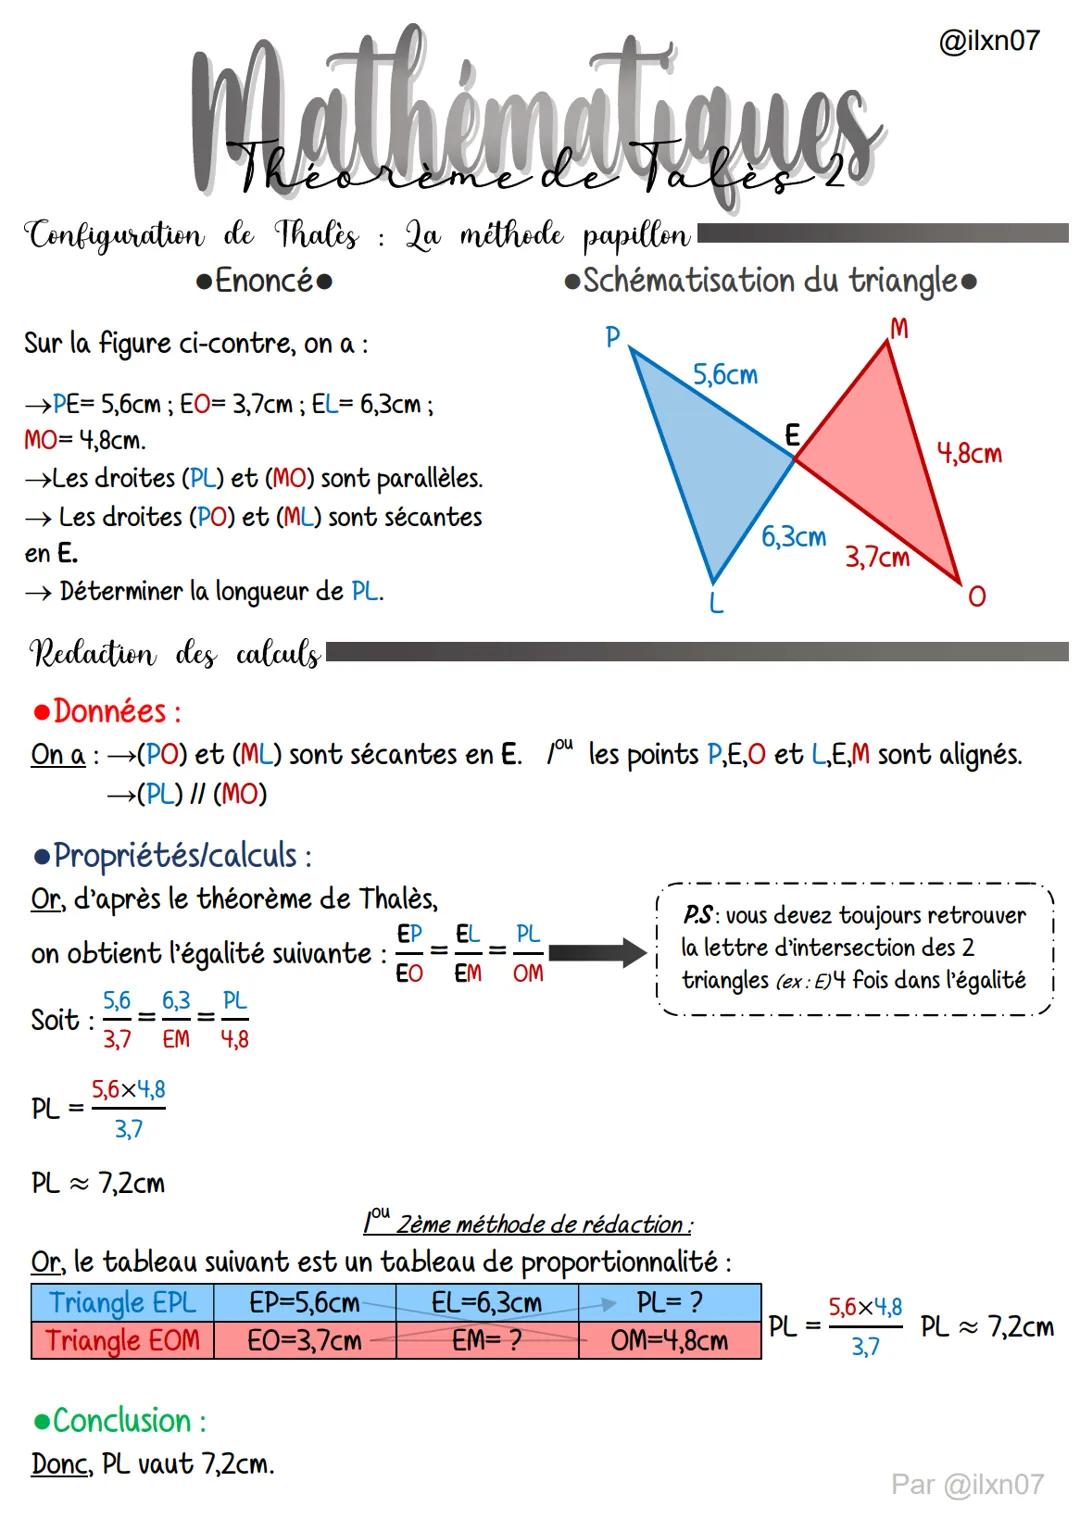 Configuration de Thalès: La méthode papillon!
Enoncé
Mathématiques
Propriétés/calculs :
Or, d'après le théorème de Thalès,
Sur la figure ci-